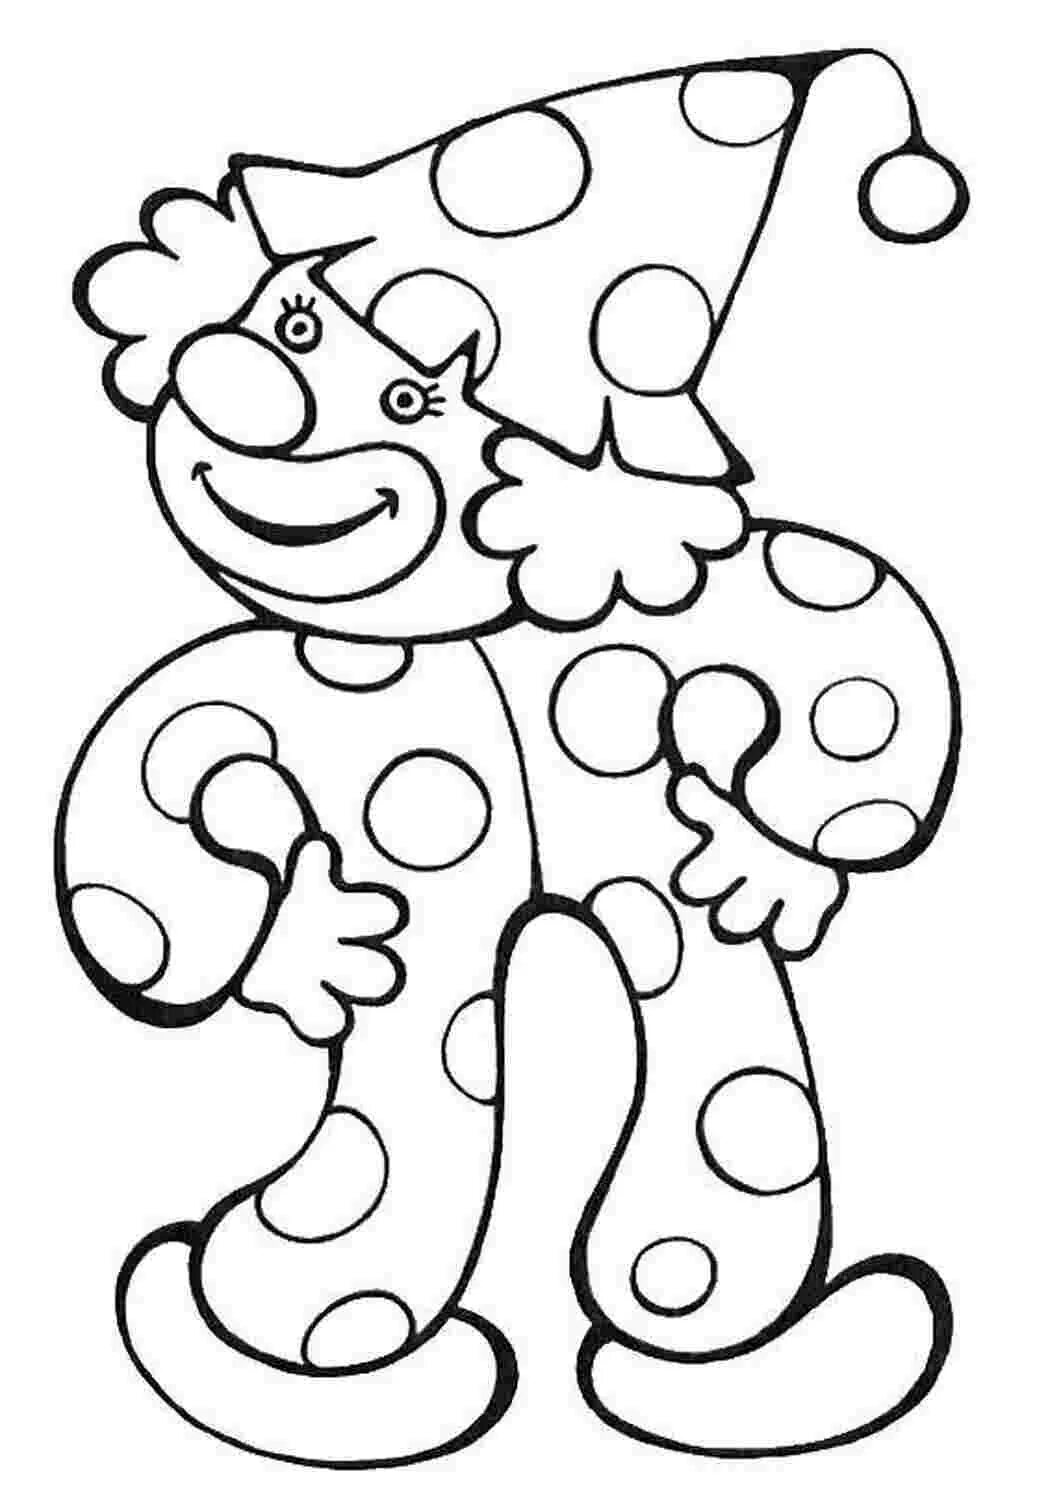 Пластилинография клоун. Клоун раскраска. Клоун раскраска для детей. Клоун для раскрашивания детям. Раскраска весёлый клоун для детей.